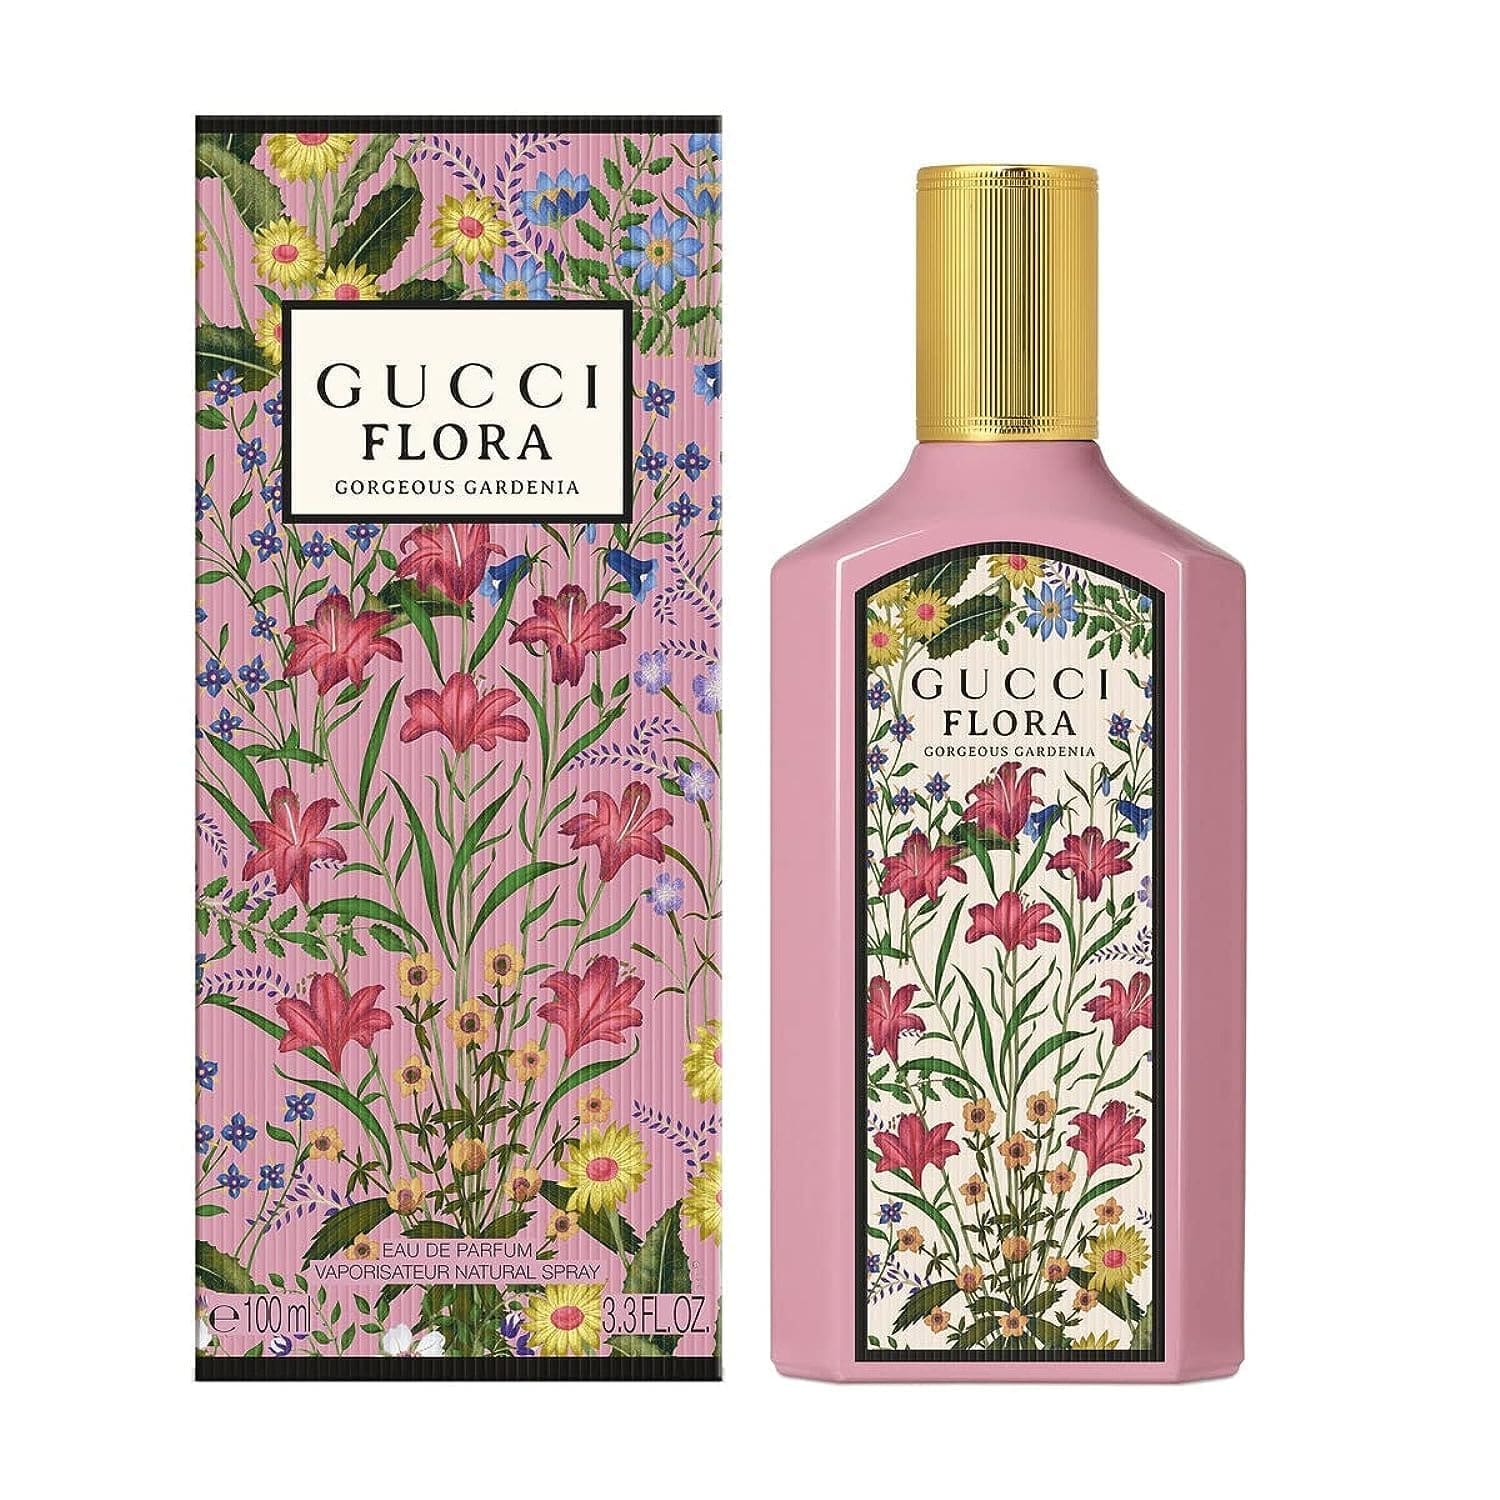 3066 Flora Gorgeous Gardenia Gucci edp 100 ml